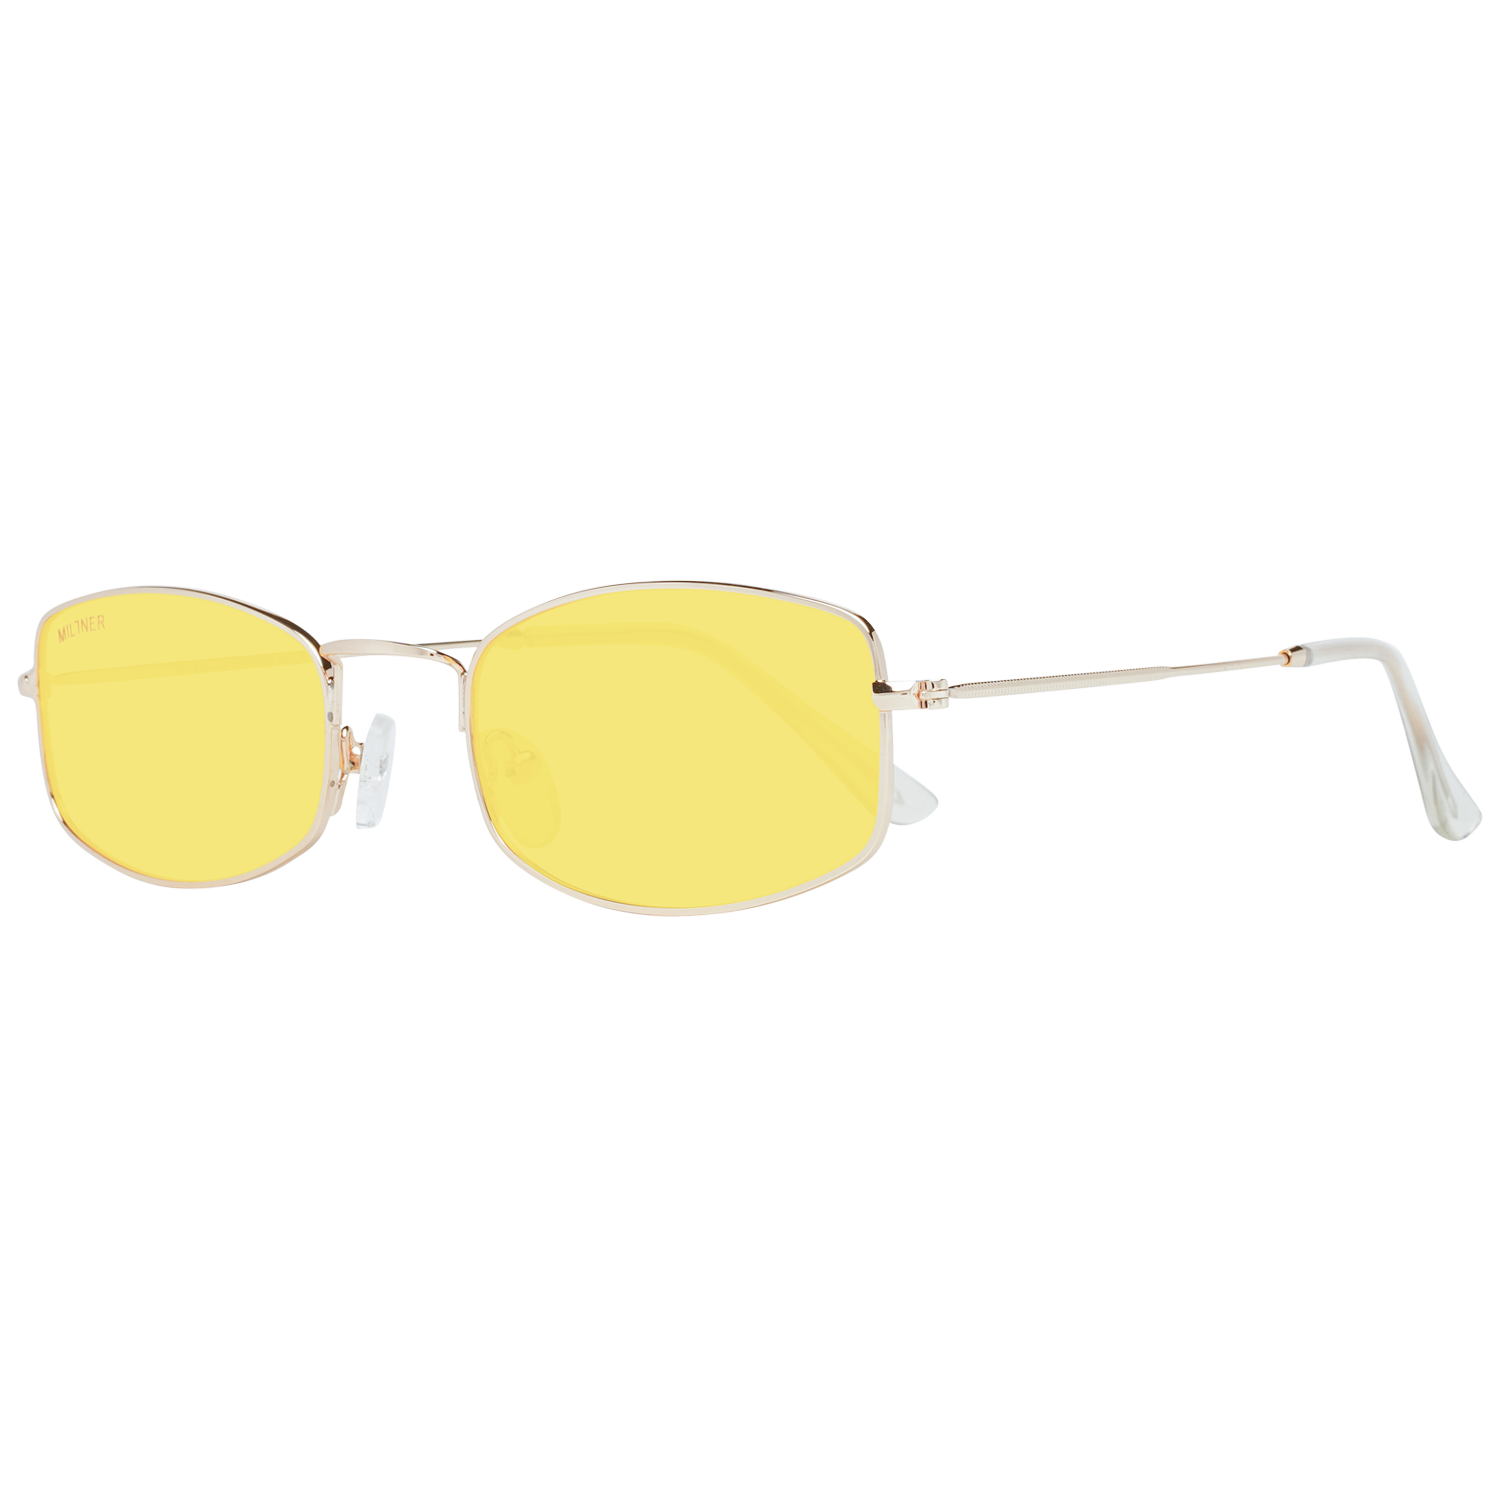 Millner Sunglasses Millner Sunglasses 0020704 Hilton Eyeglasses Eyewear UK USA Australia 